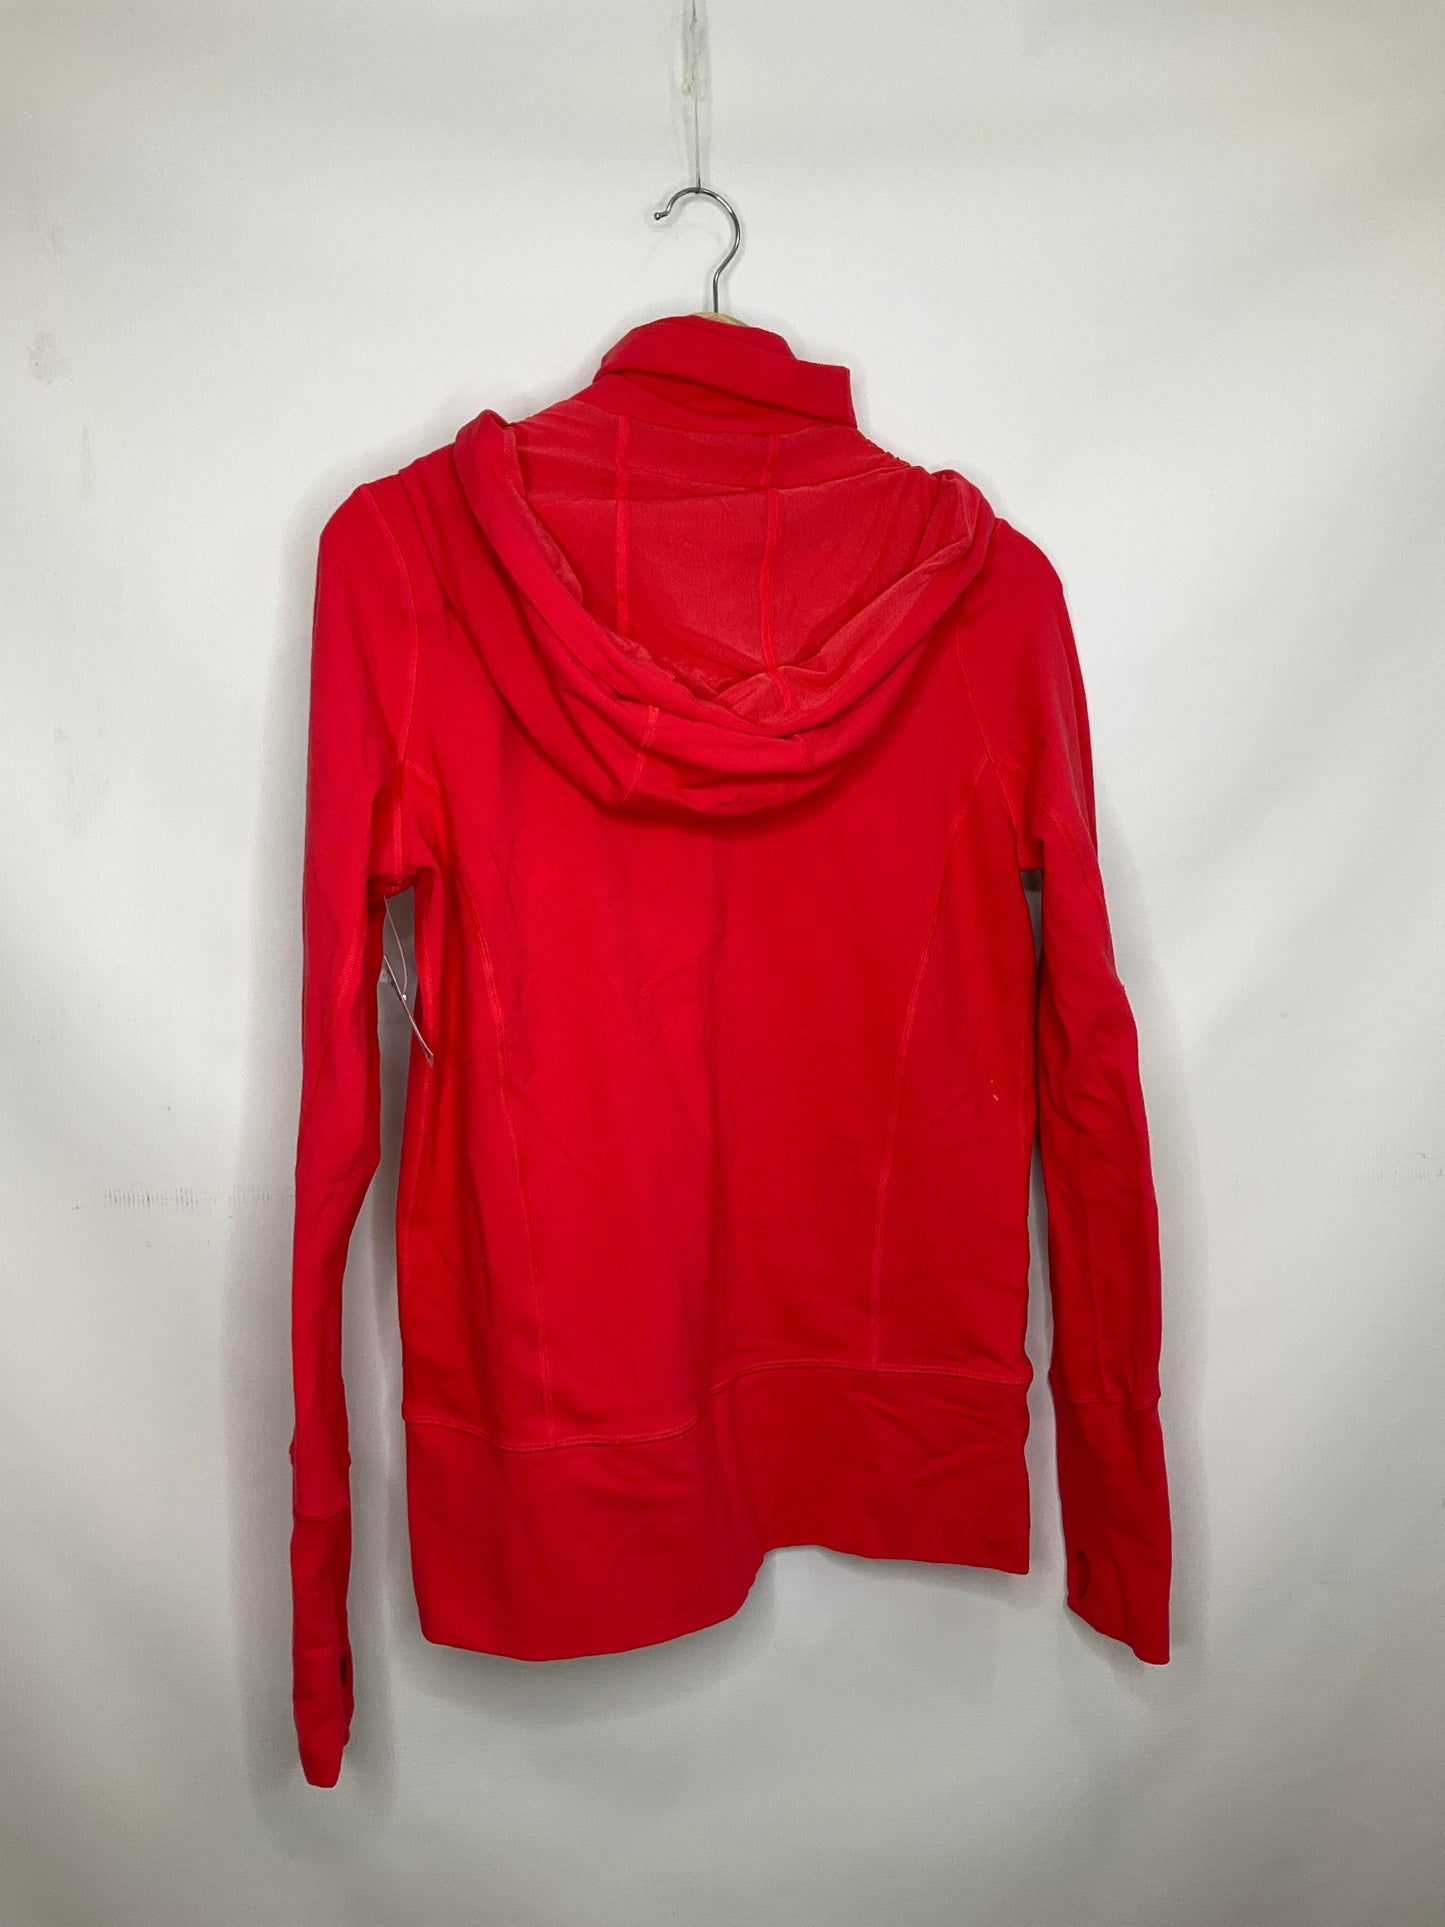 Red Athletic Jacket Lululemon, Size 8